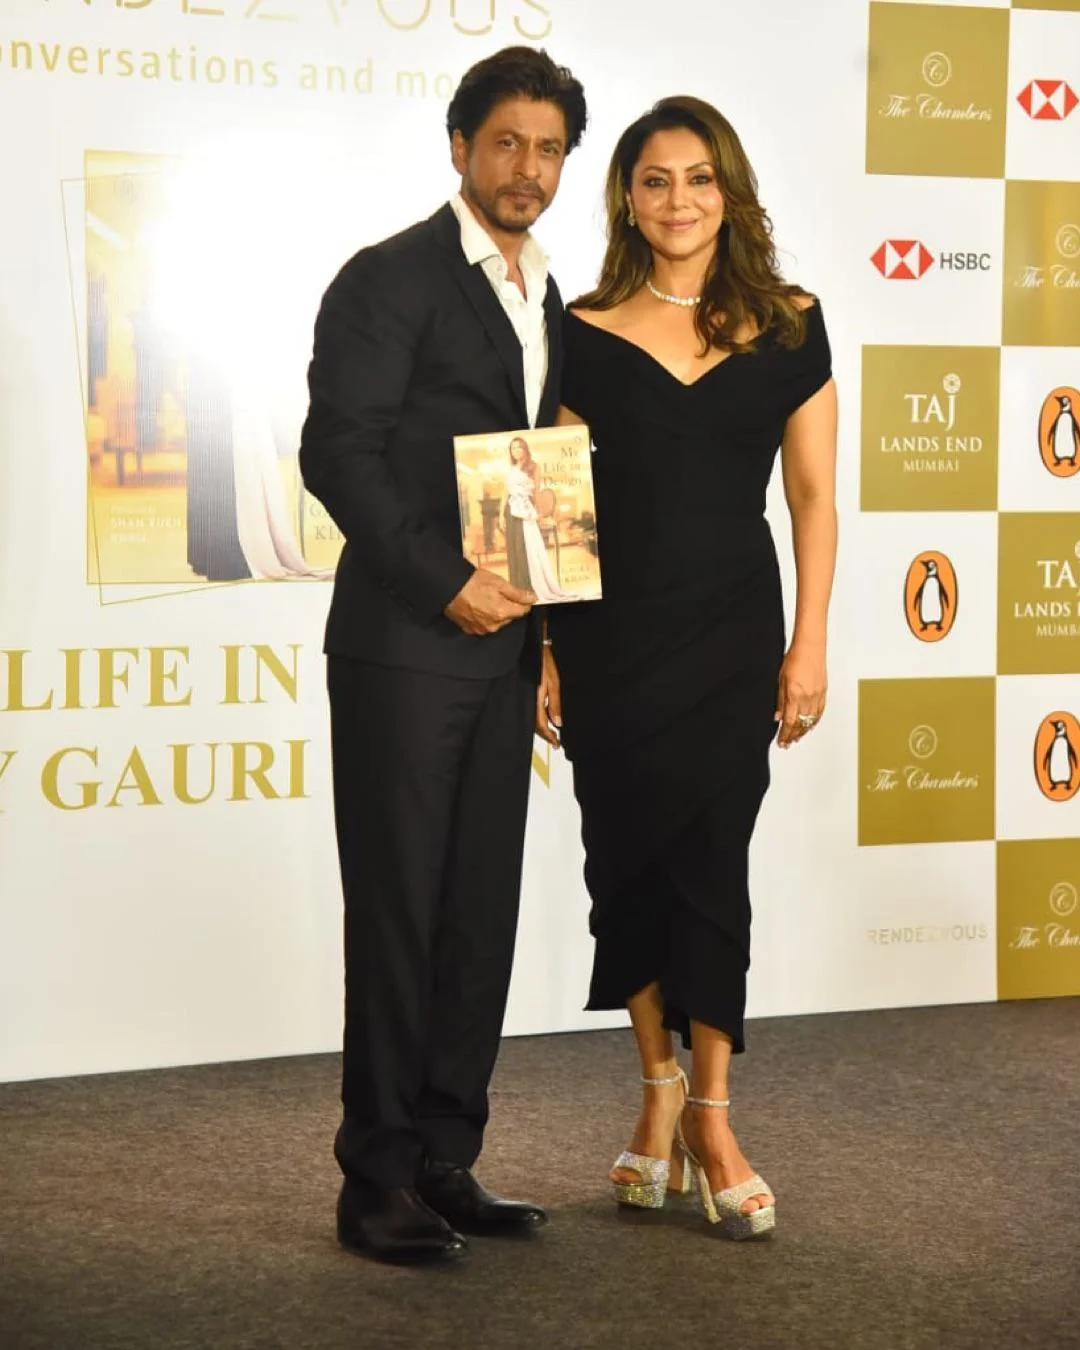 Shah Rukh Khan with Gauri Khan at book launch